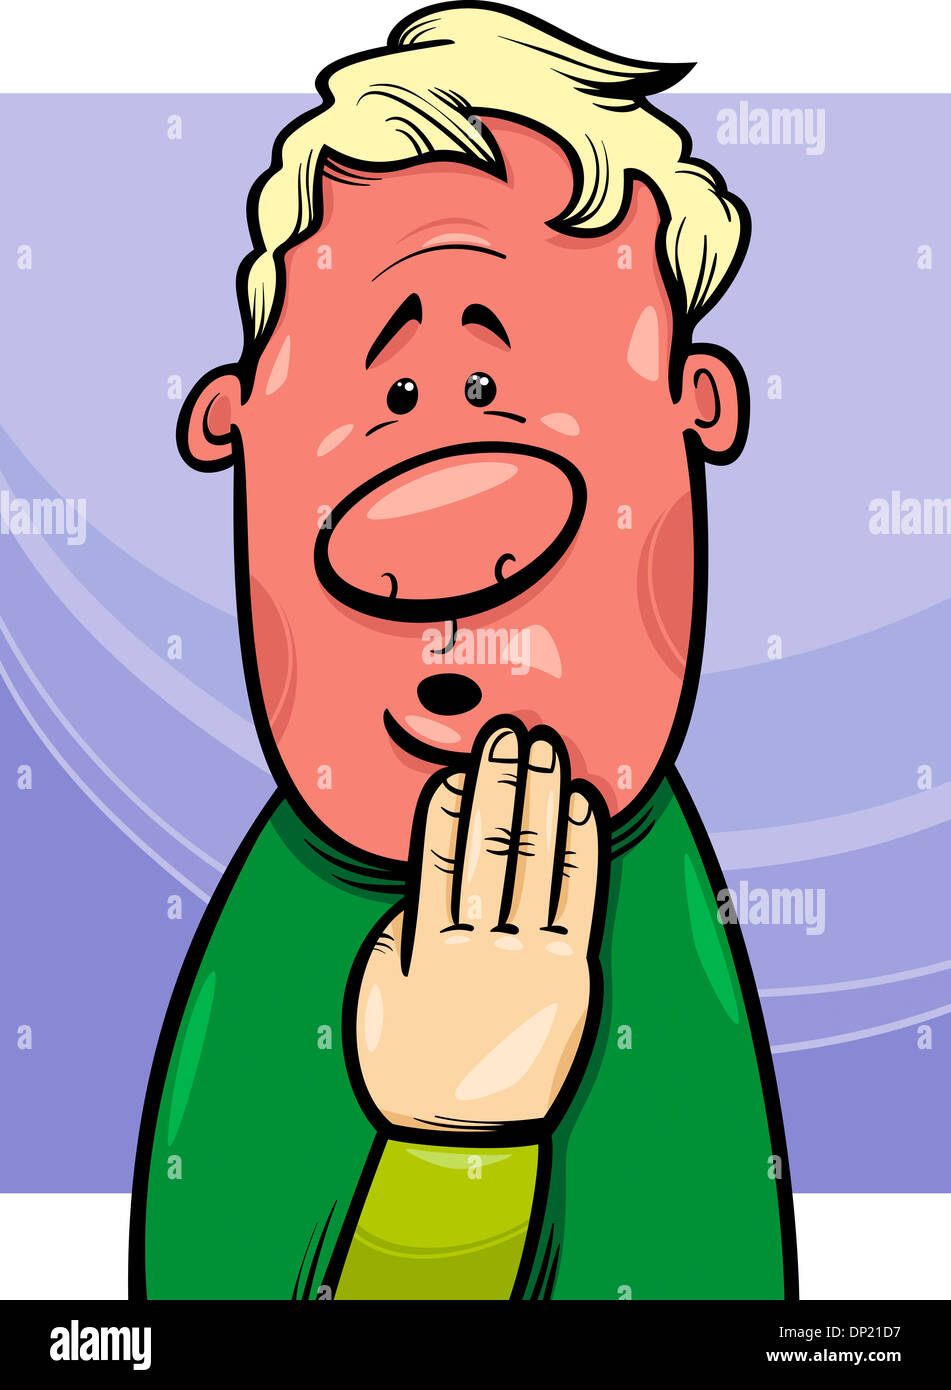 Cartoon Concept Illustration of Shy or Ashamed Blushing Guy Stock Photo